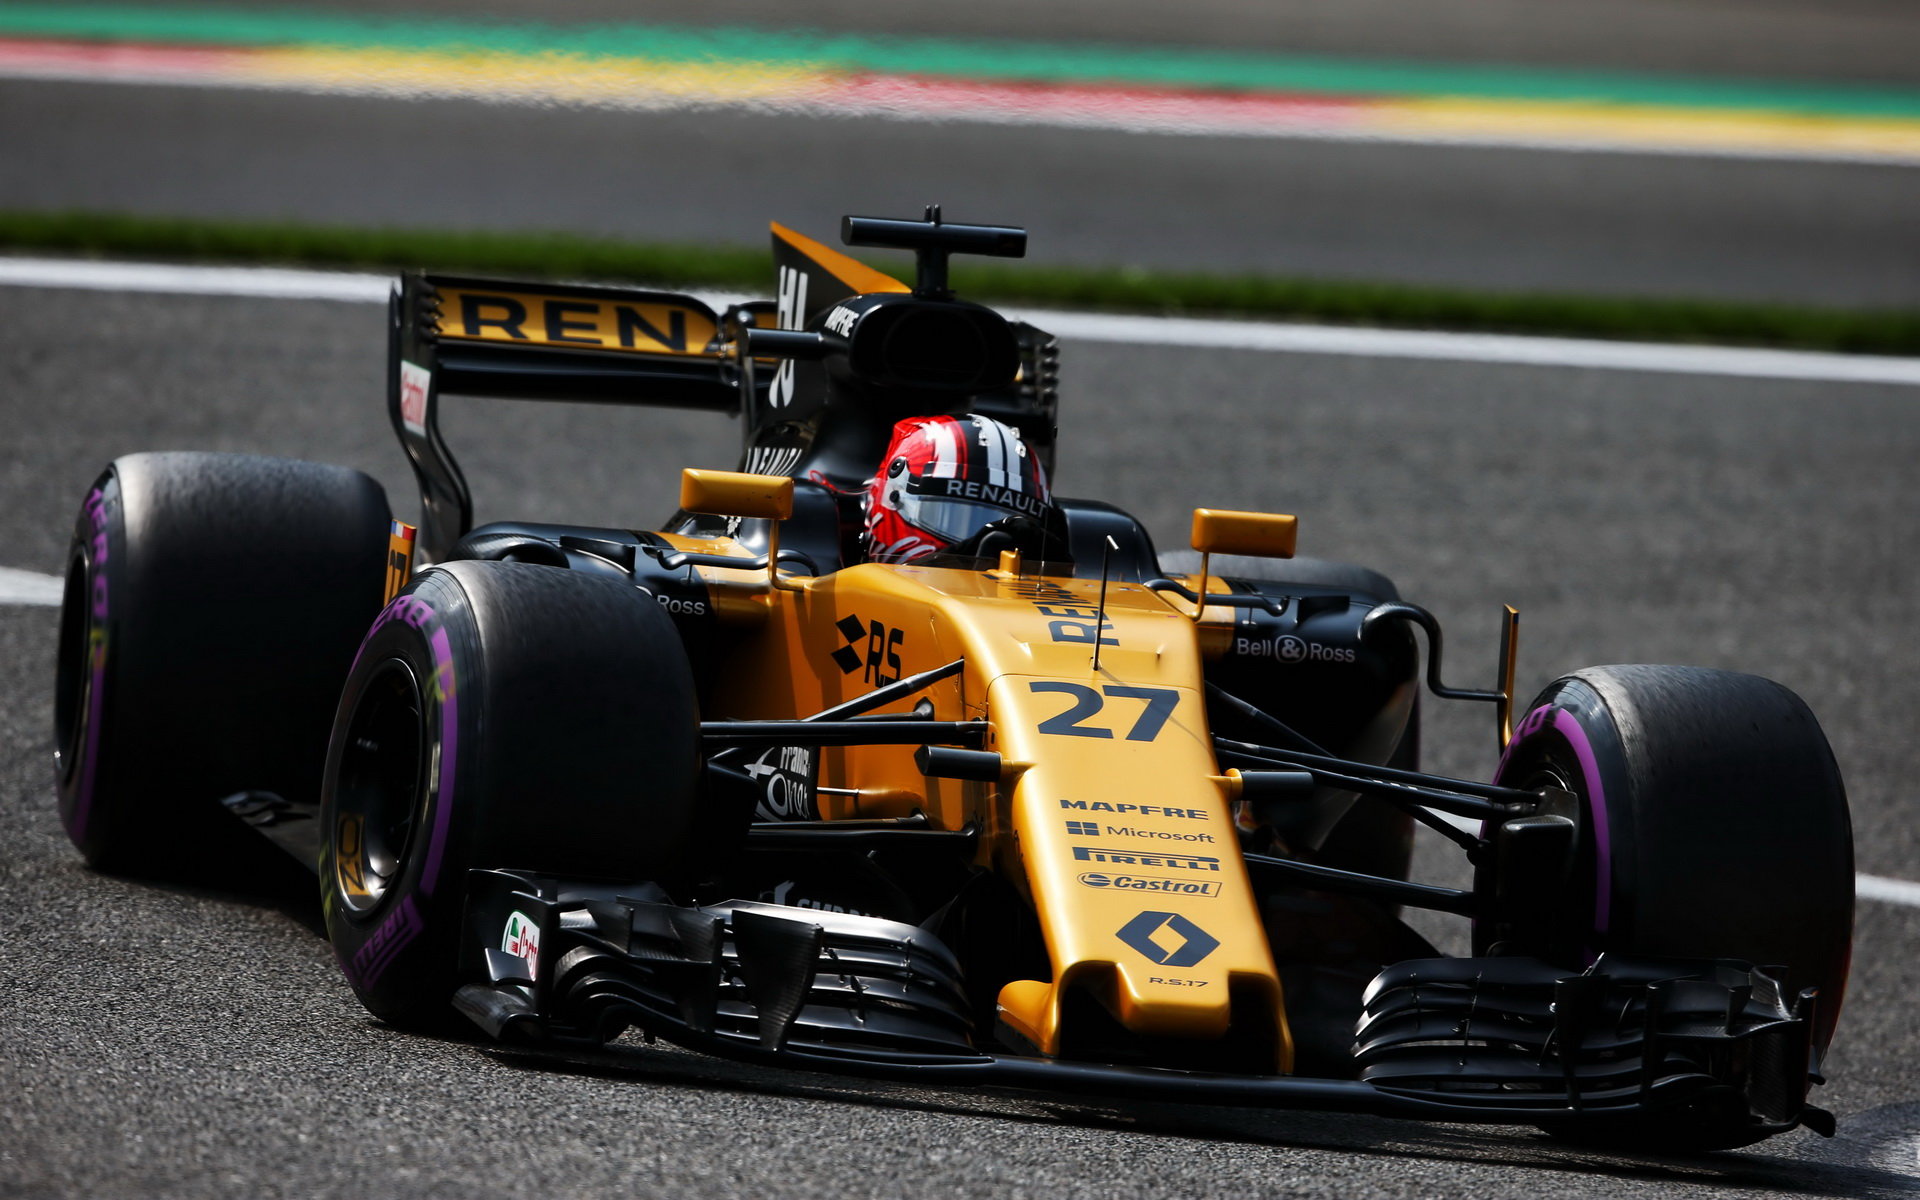 Nico Hülkenberg musel v Austinu odstoupit kvůli tlaku oleje, Carlos Sainz jej však dokázal zastoupit a vybojovat své první body pro Renault